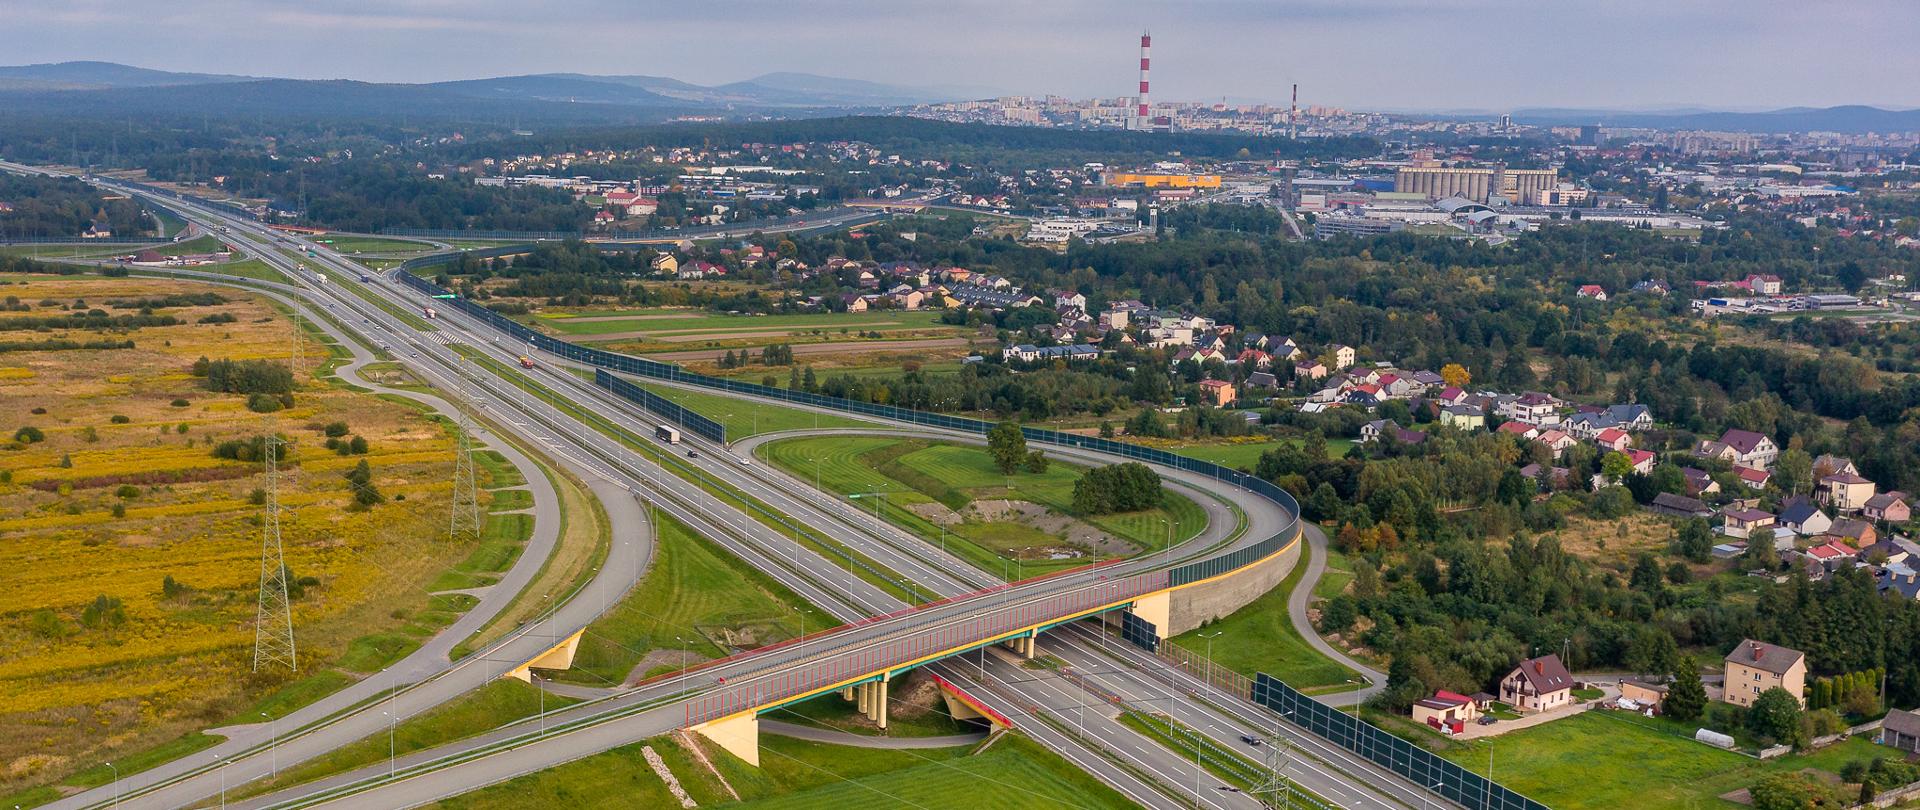 S7 Kielce Zachód - węzeł drogowy na pierwszym planie, na drugim planie panorama miasta (zdjęcie lotnicze) 